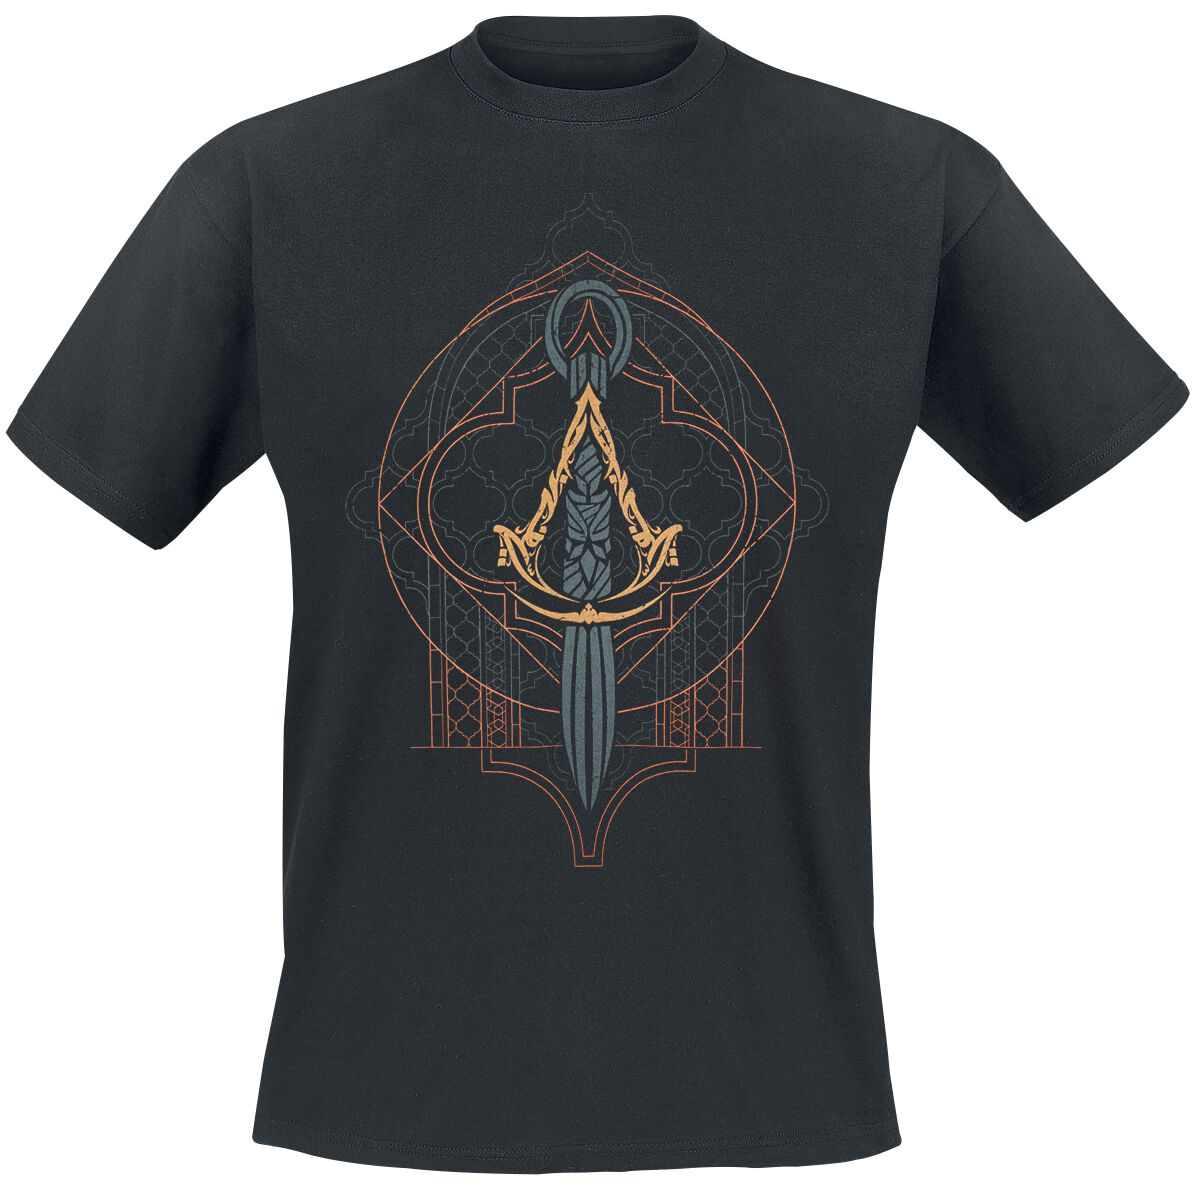 Assassin`s Creed - Gaming T-Shirt - Mirage - Emblem - S bis XXL - für Männer - Größe S - schwarz  - EMP exklusives Merchandise!